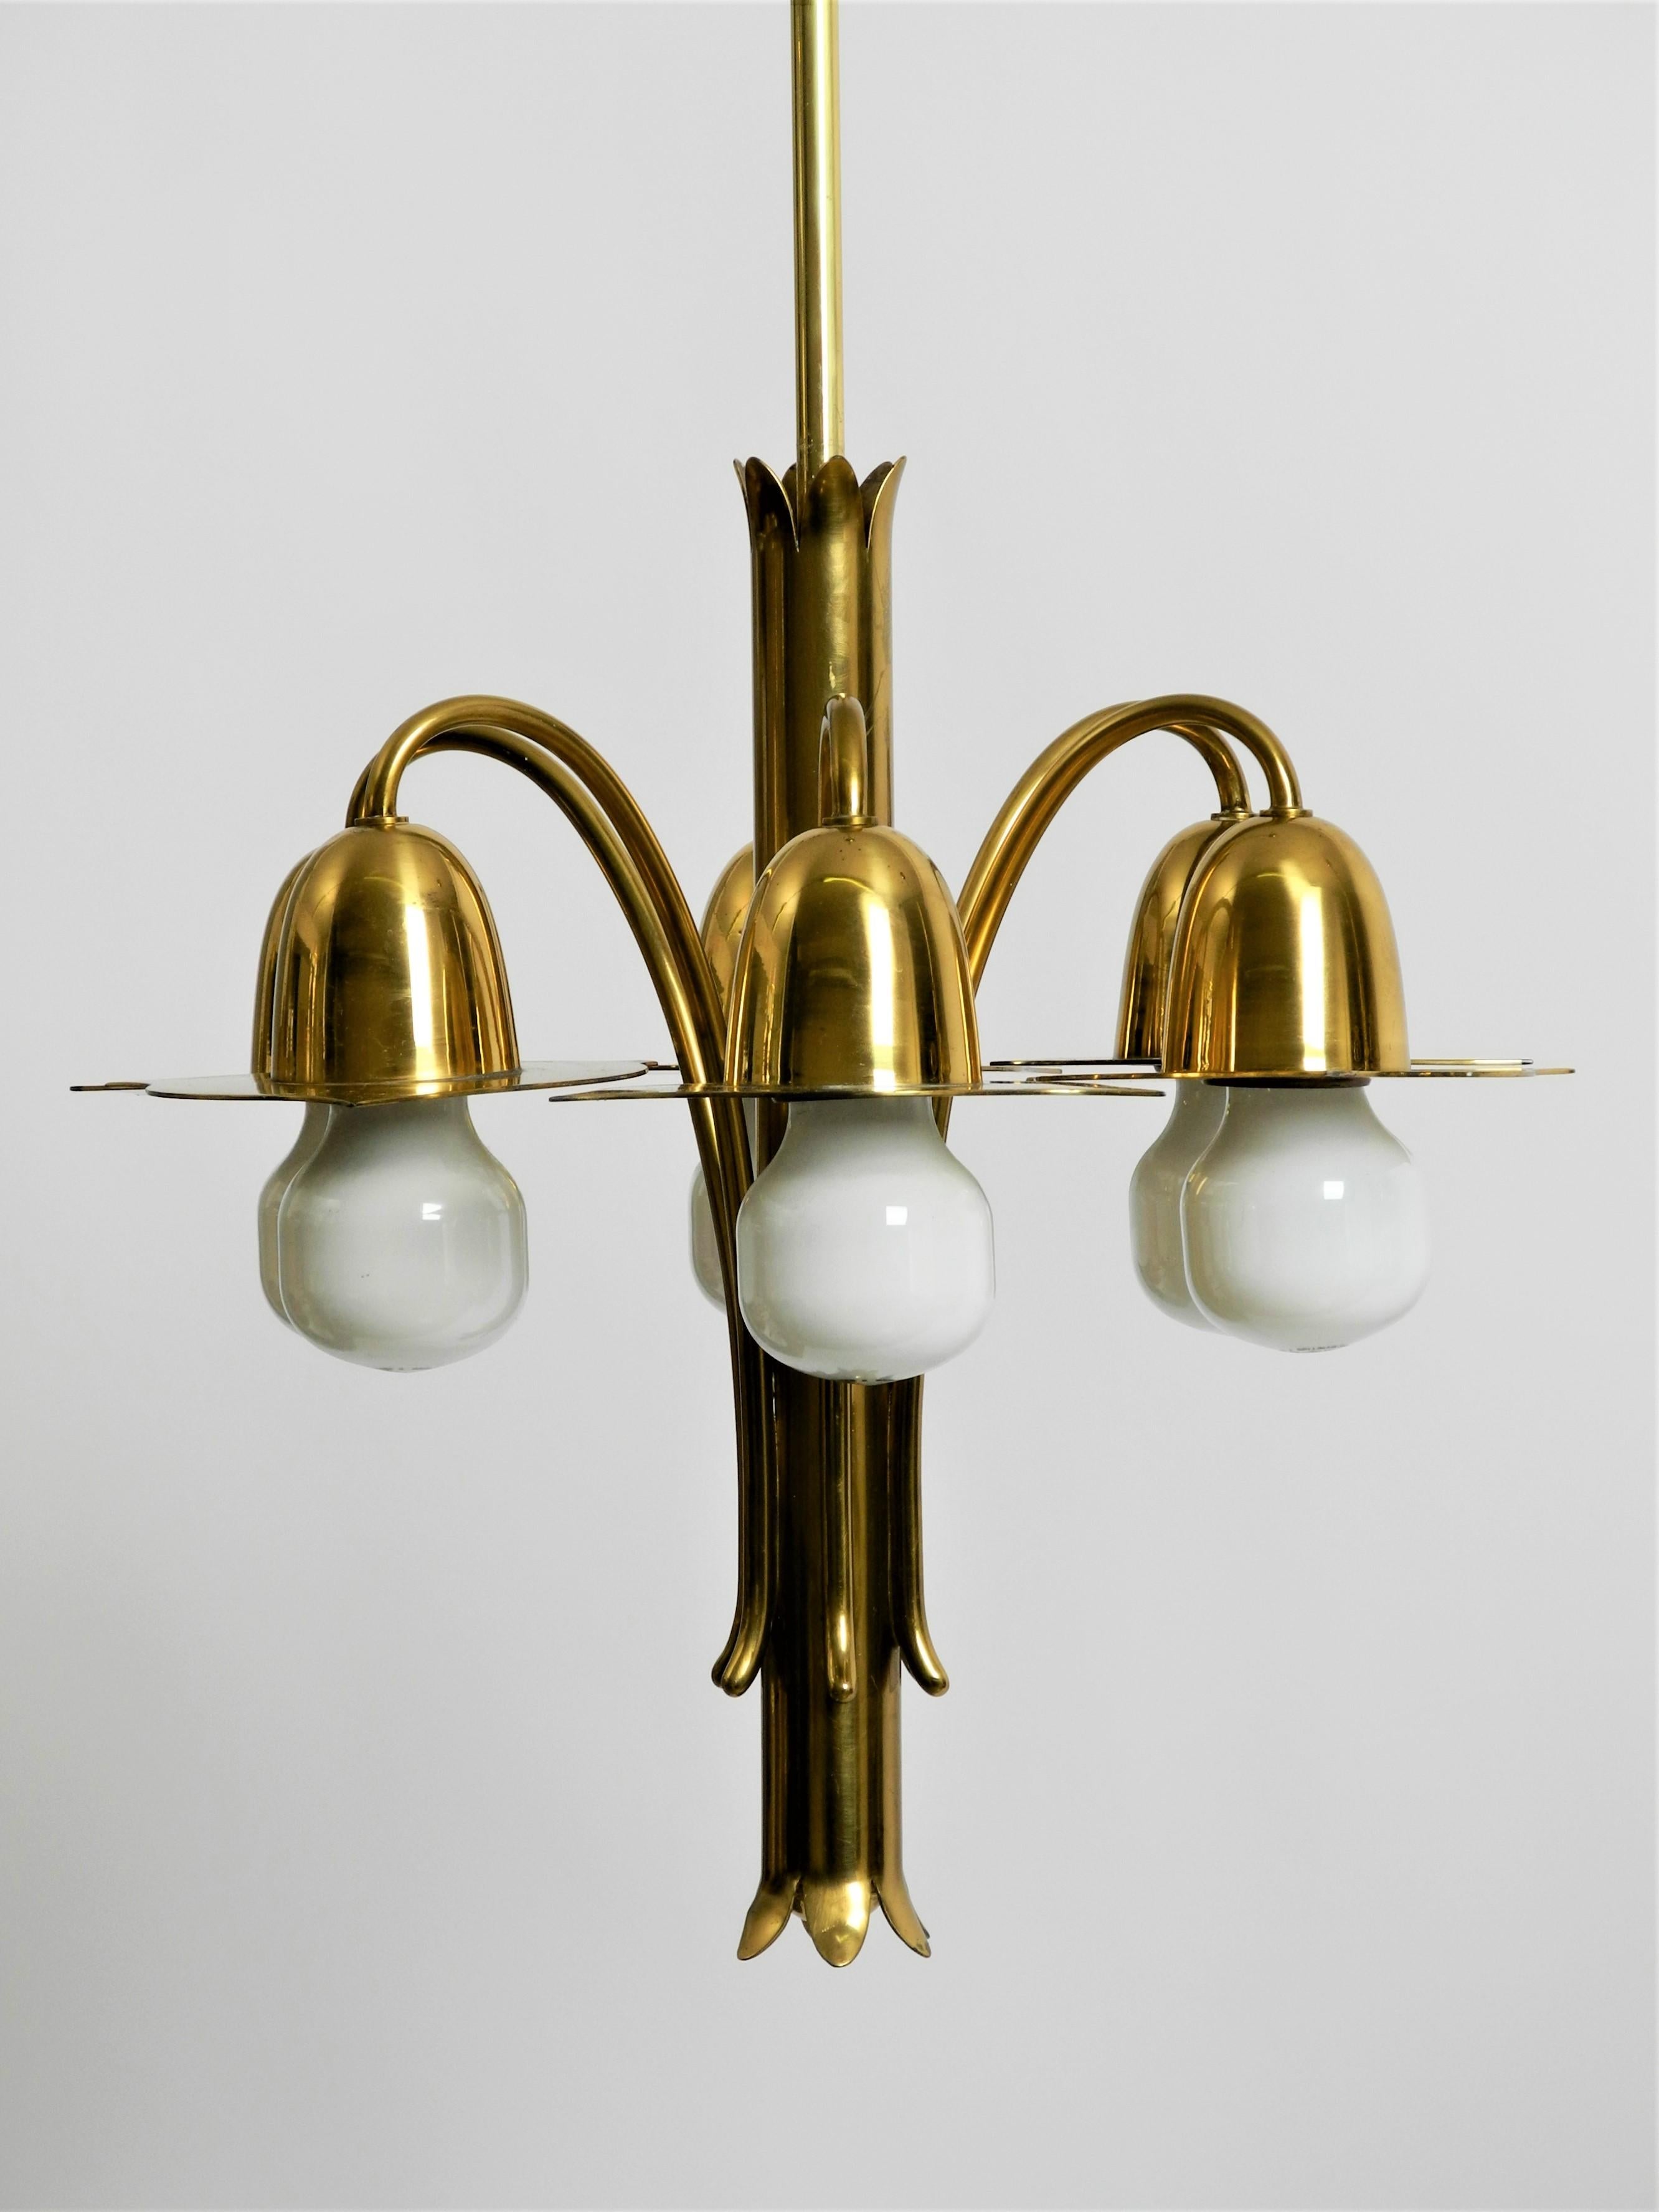 Pair of Richard Riemerschmid Pendant Lamps Chandeliers Art Nouveau, Germany 1920 For Sale 4